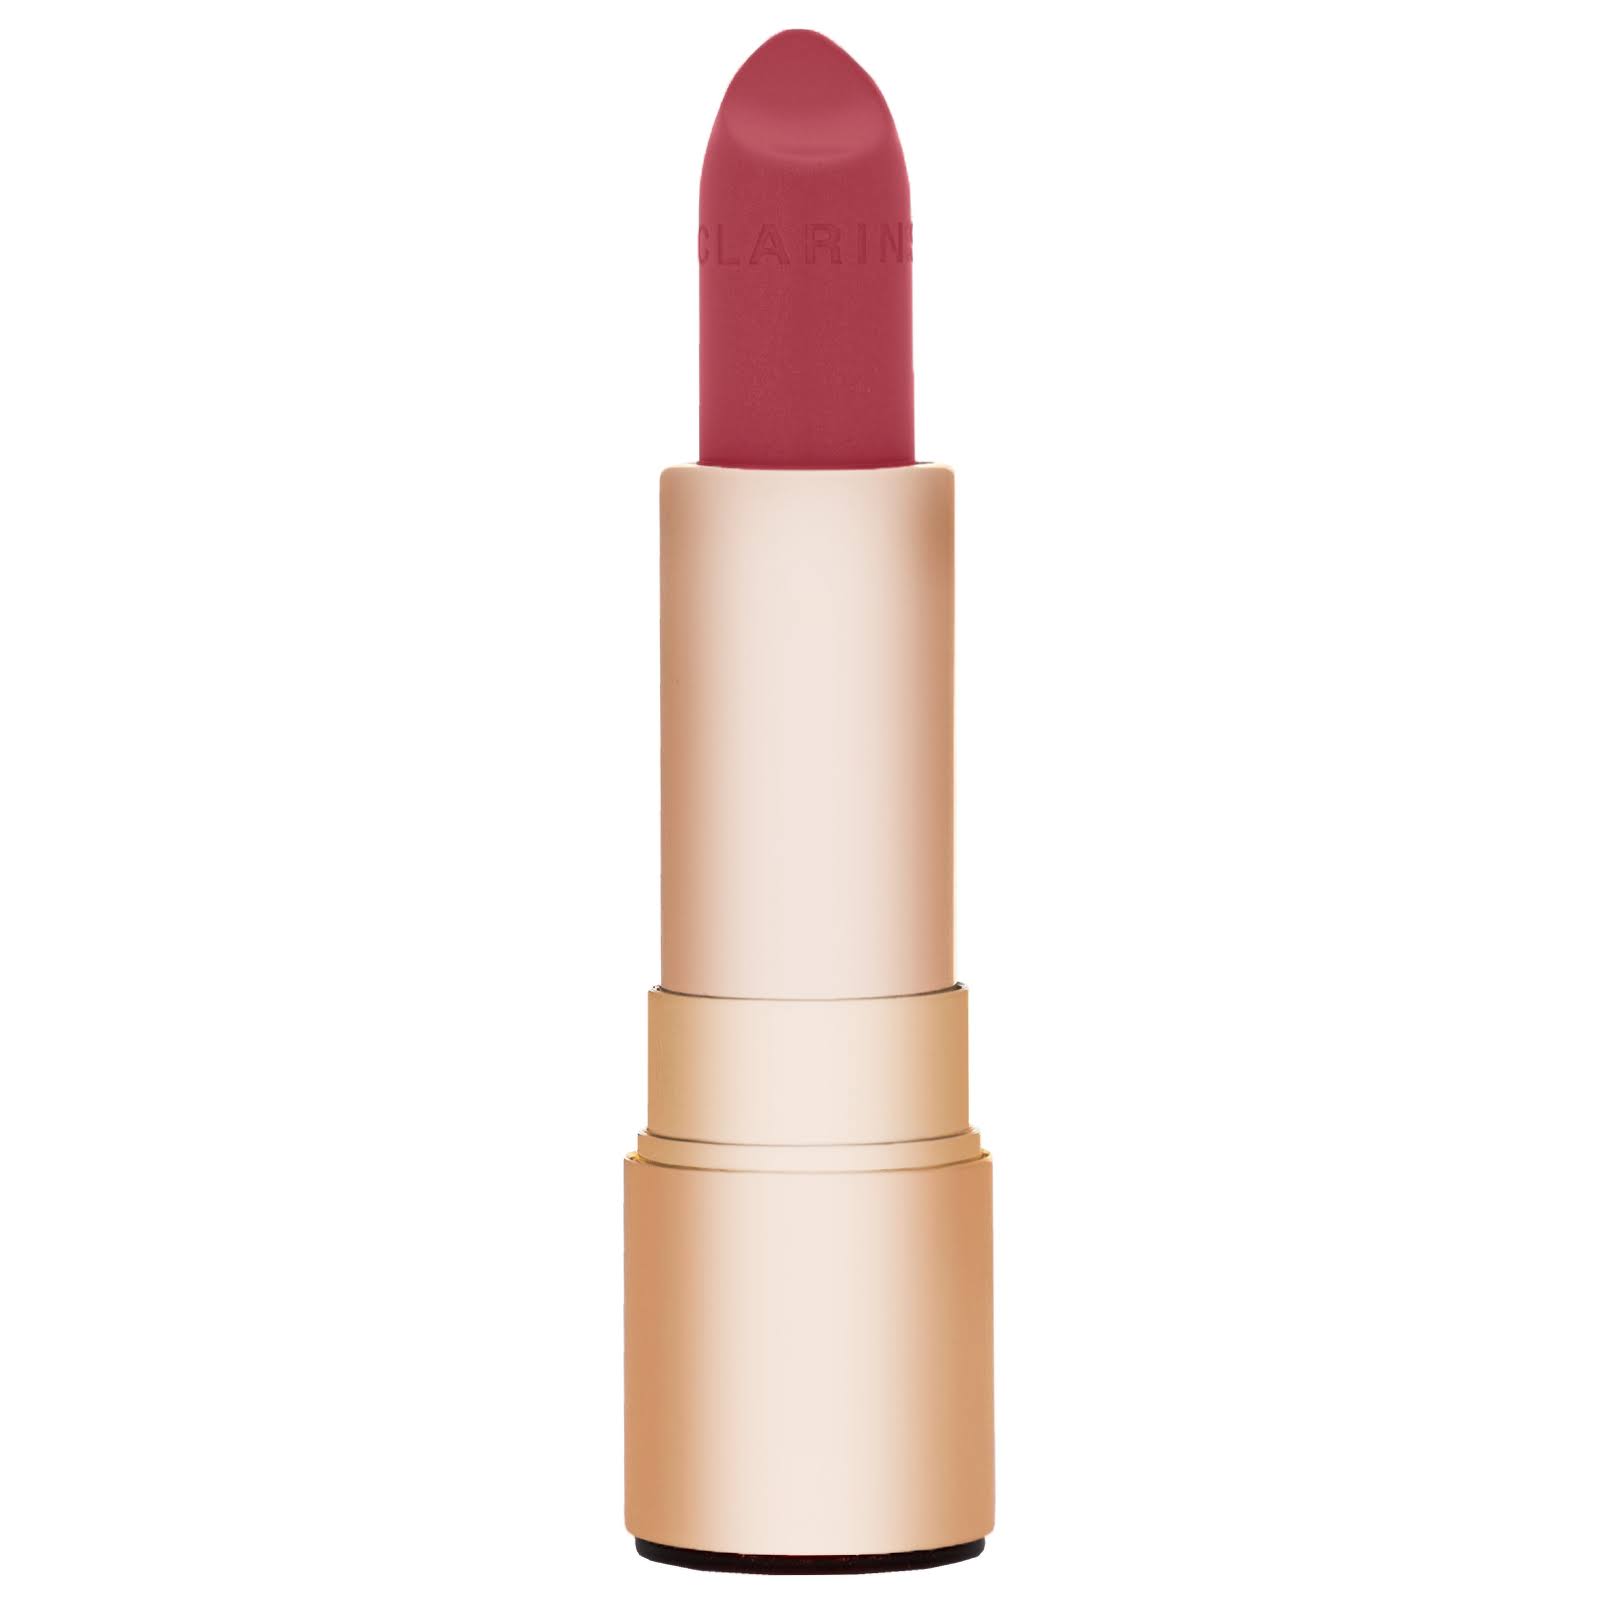 Clarins Joli Rouge Long Wearing Moisturizing Lipstick - #755 Litchi, 3.5g